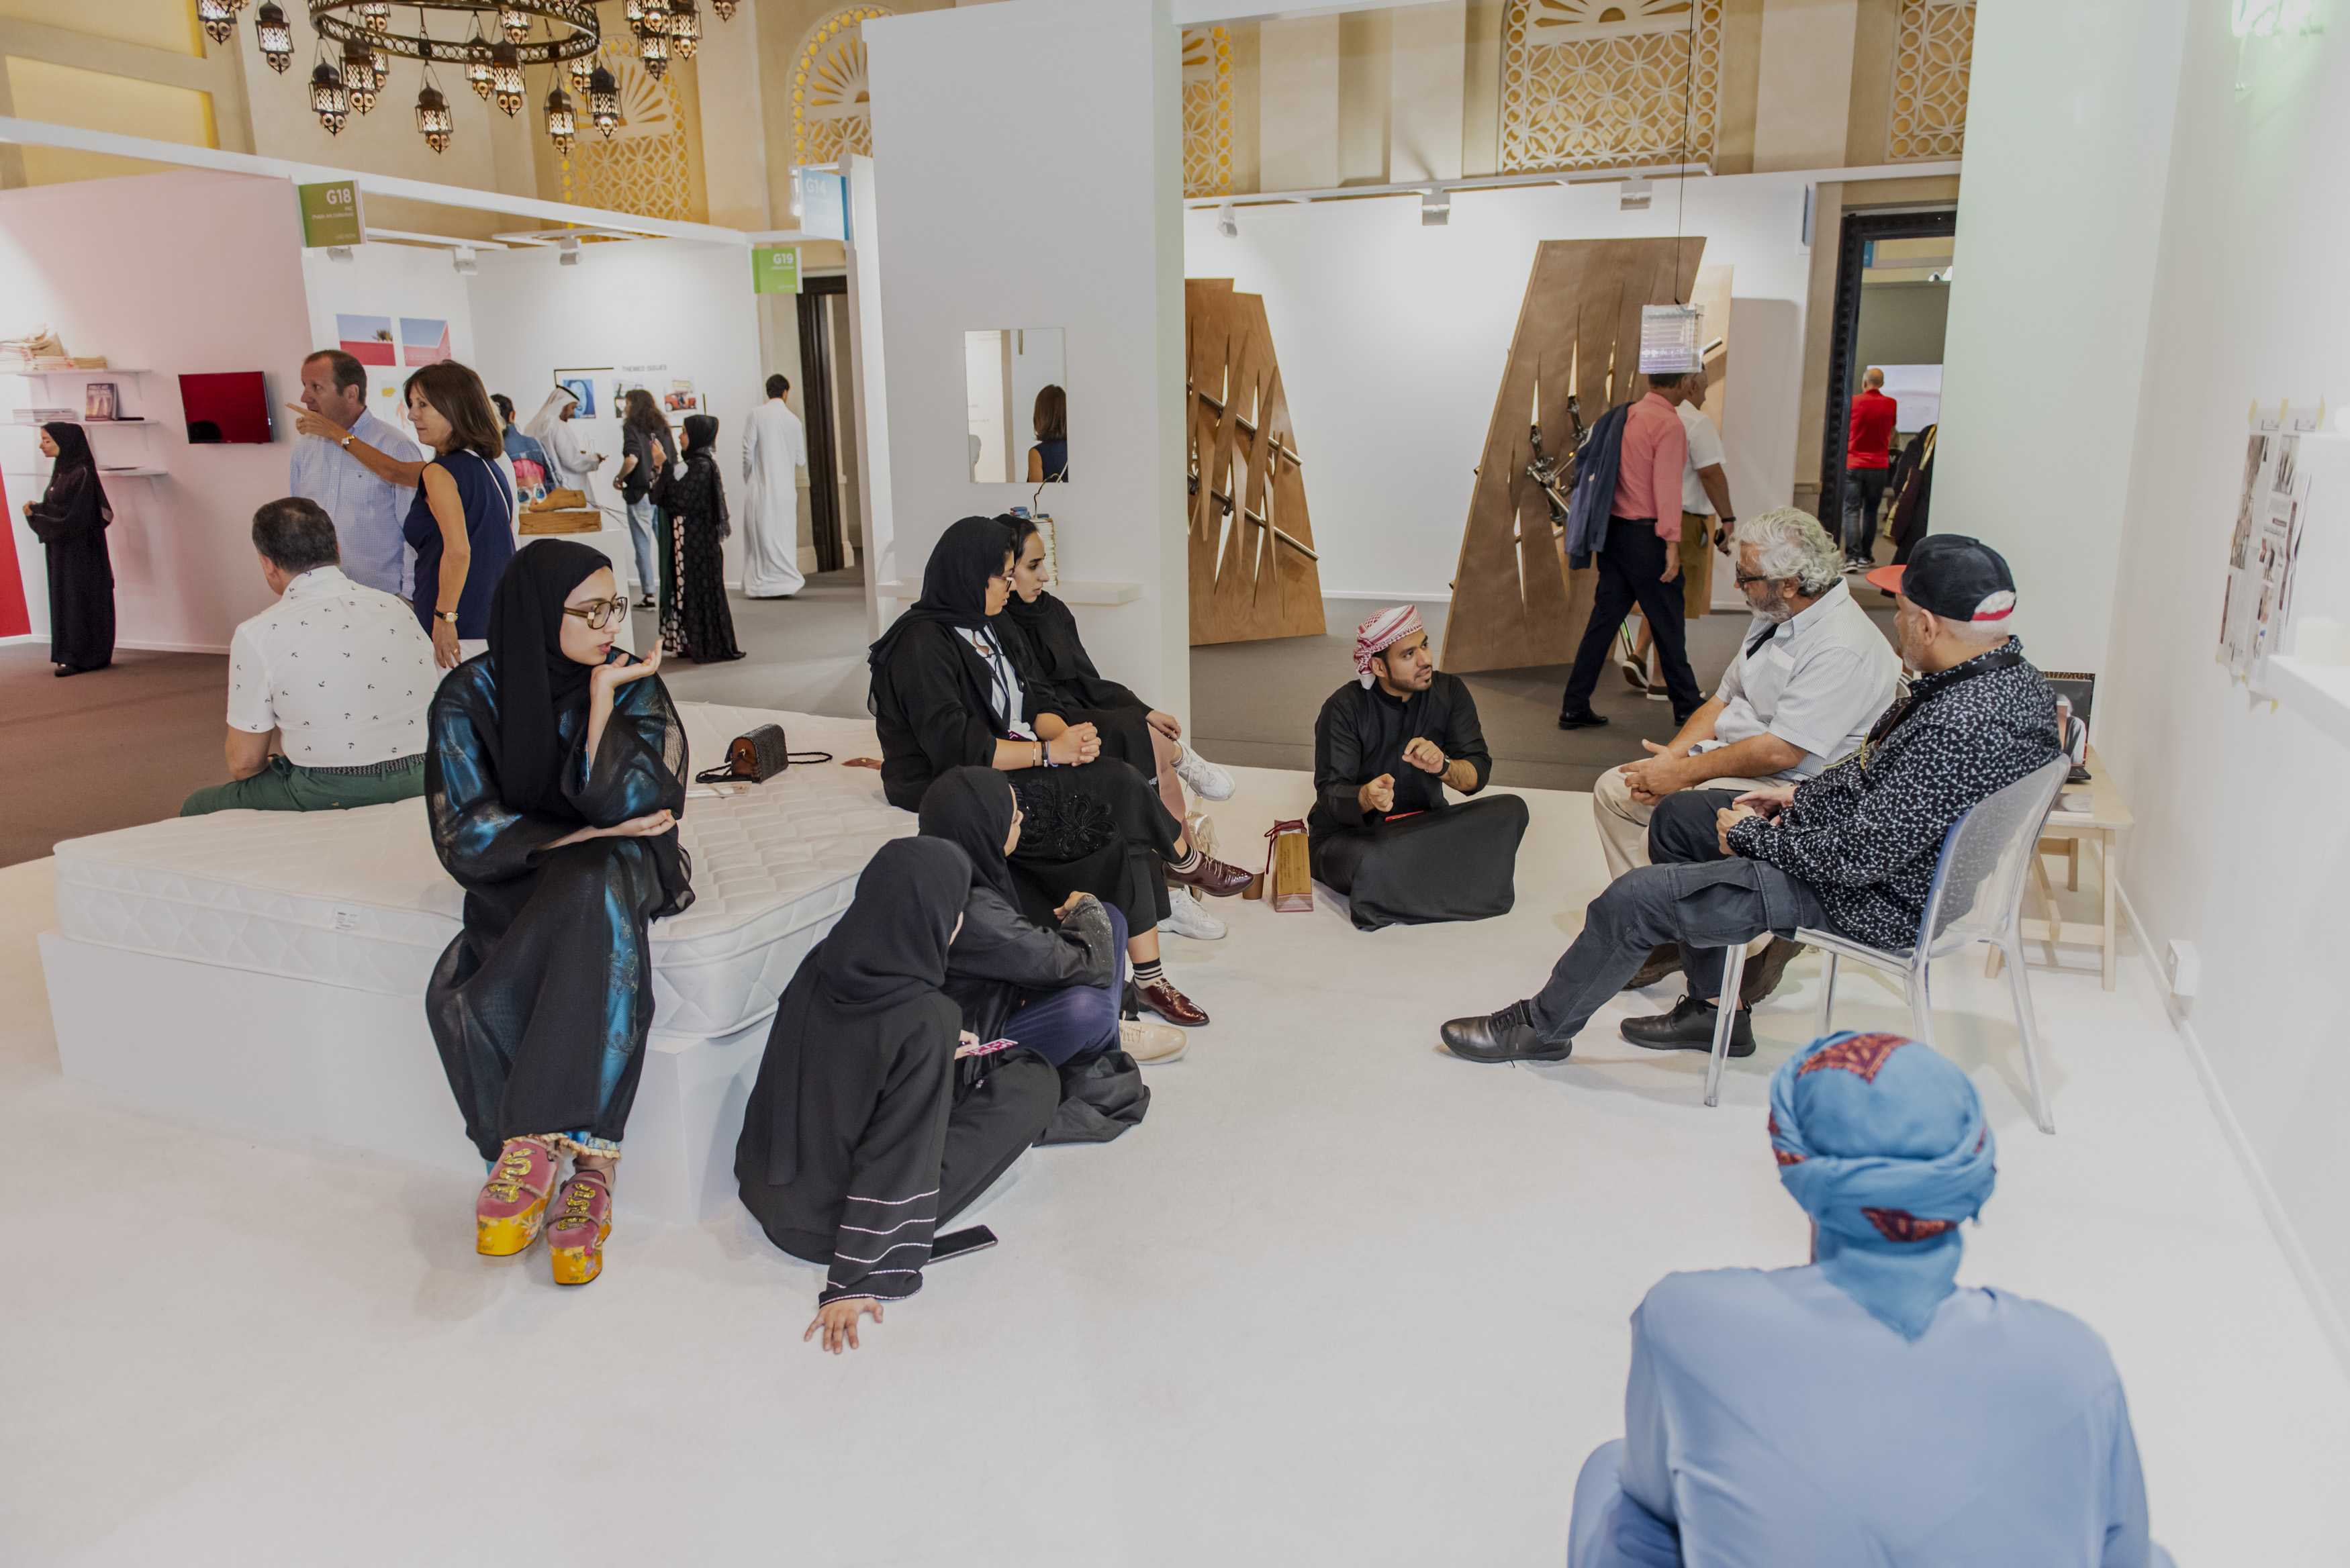 Dubai Culture And Arts Authority And The Art Dubai Group Conclude Dubai